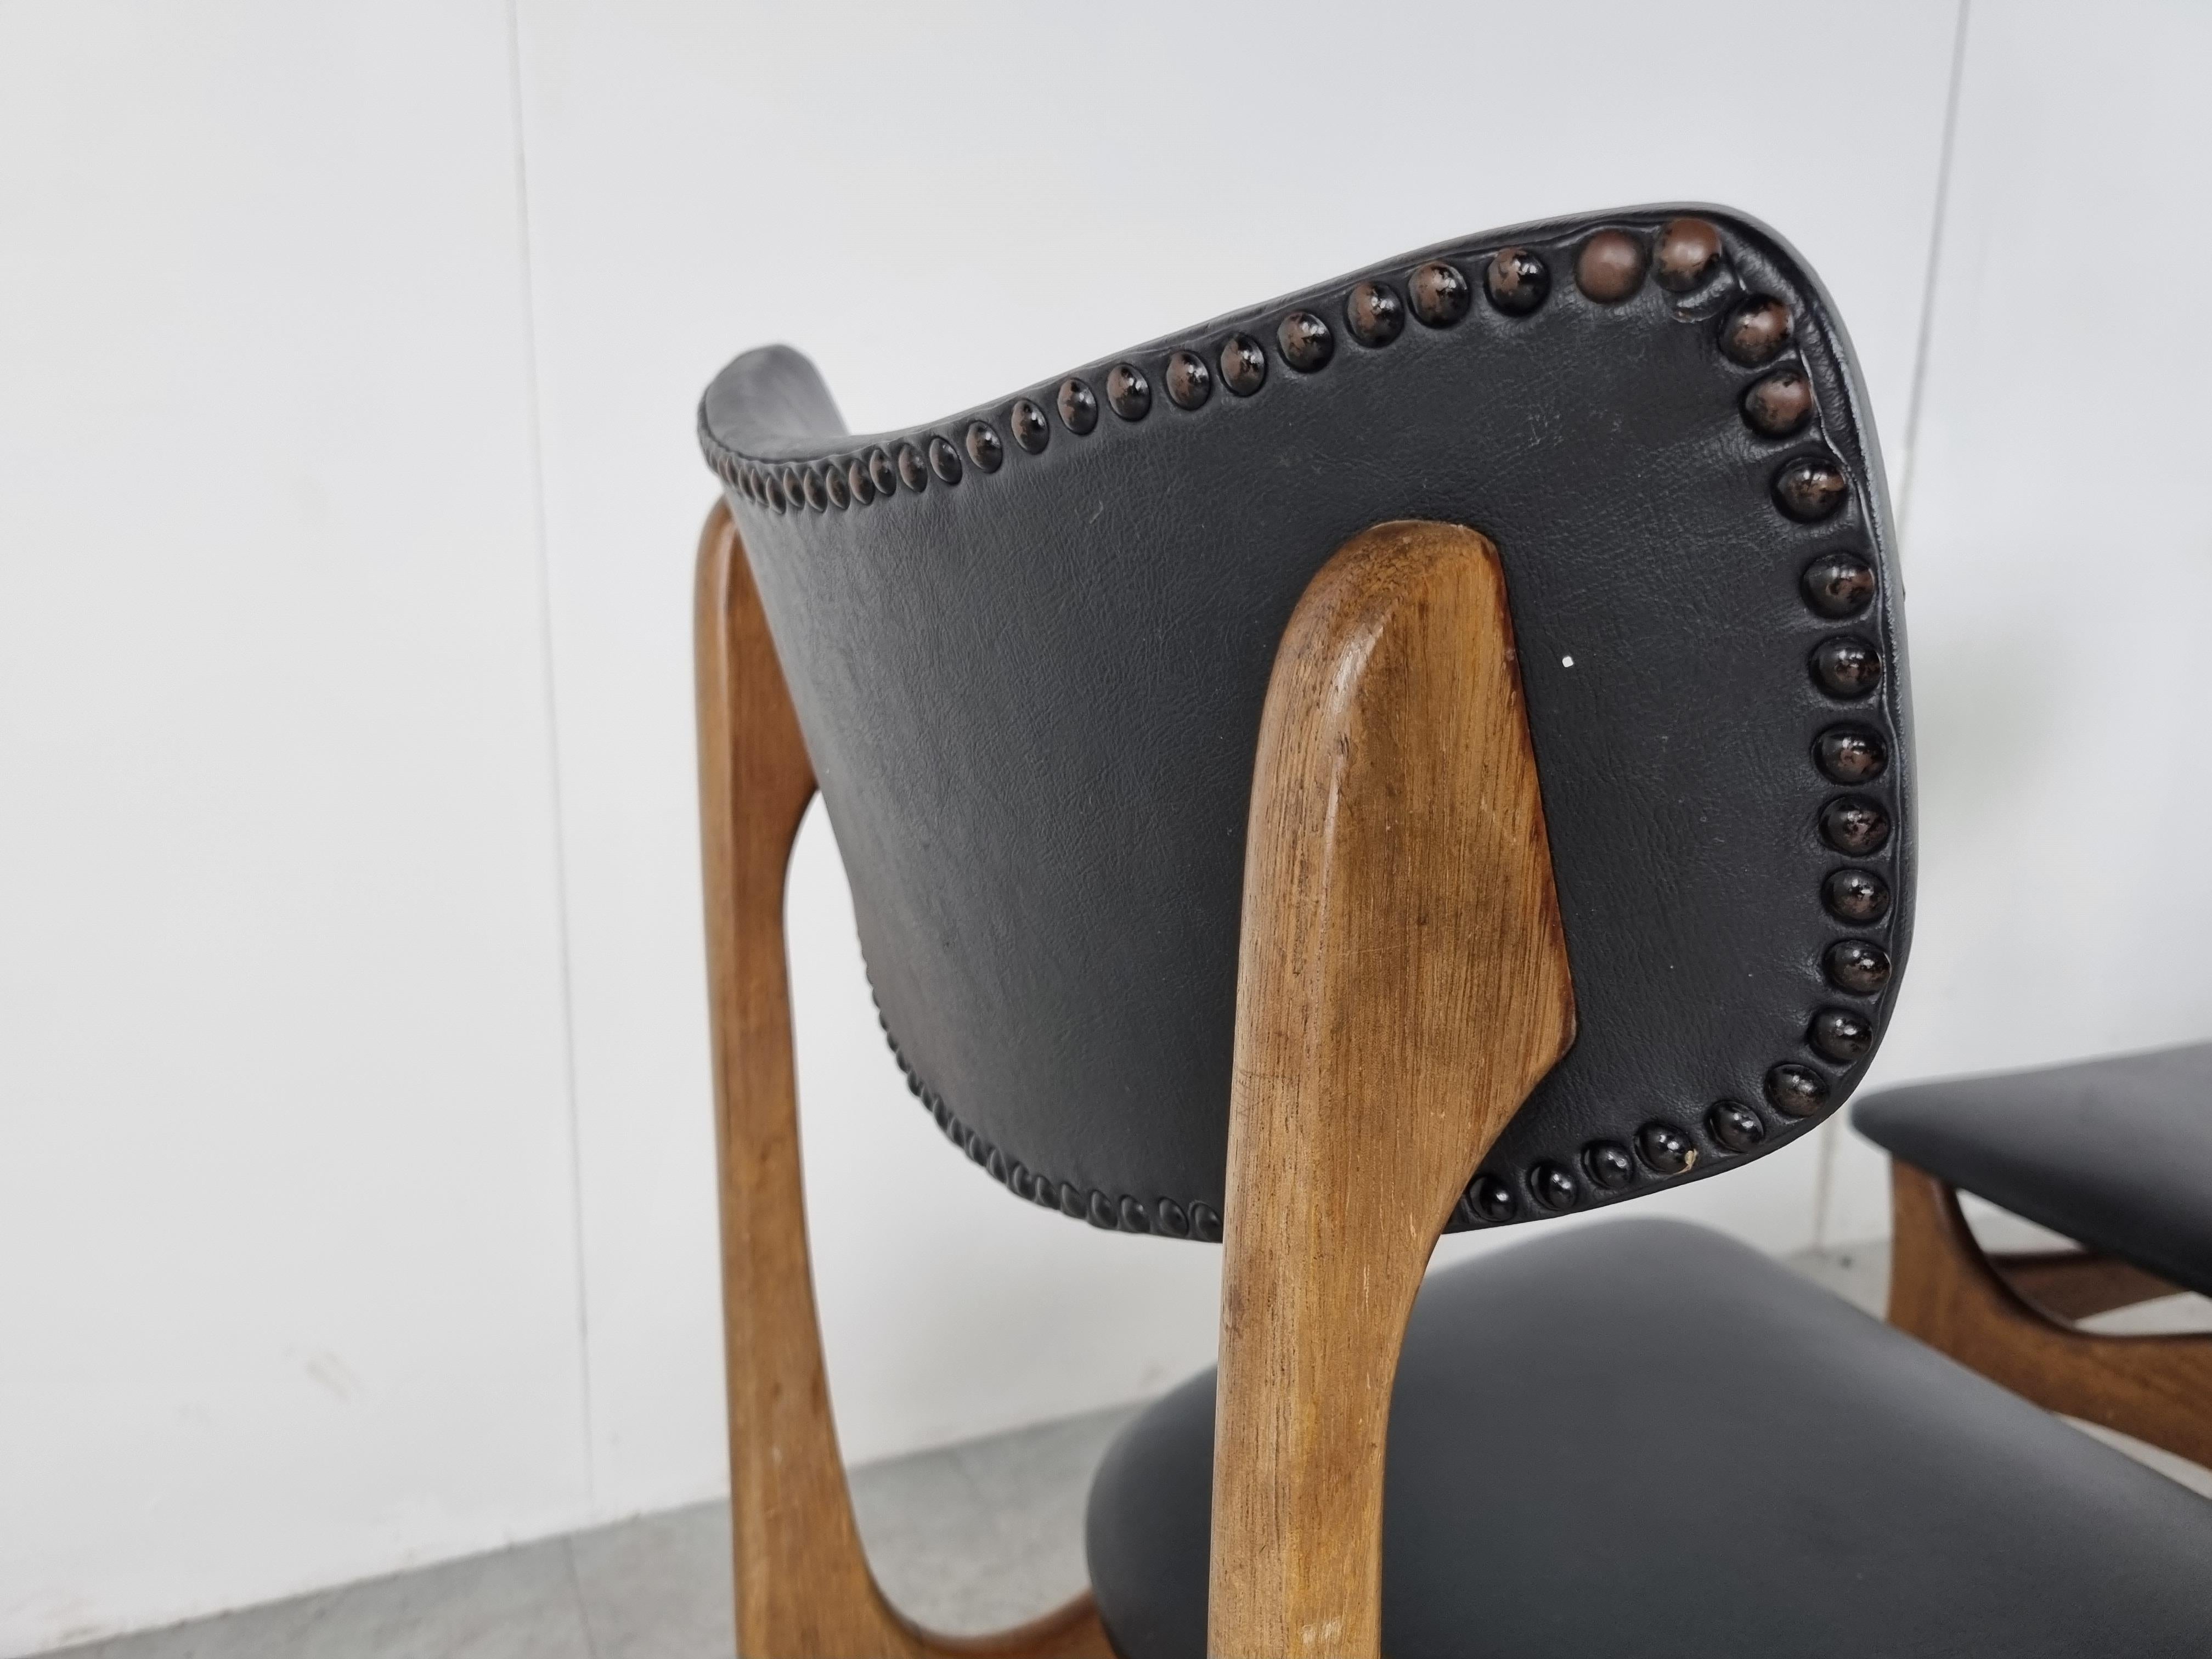 Esszimmerstühle aus der Mitte des Jahrhunderts, entworfen von Louis van Teeffelen.

Schön gearbeitete geschwungene Teakholzrahmen mit schwarzer Kunstlederpolsterung.

Die Stühle sind in einem guten Originalzustand.

1960er Jahre -